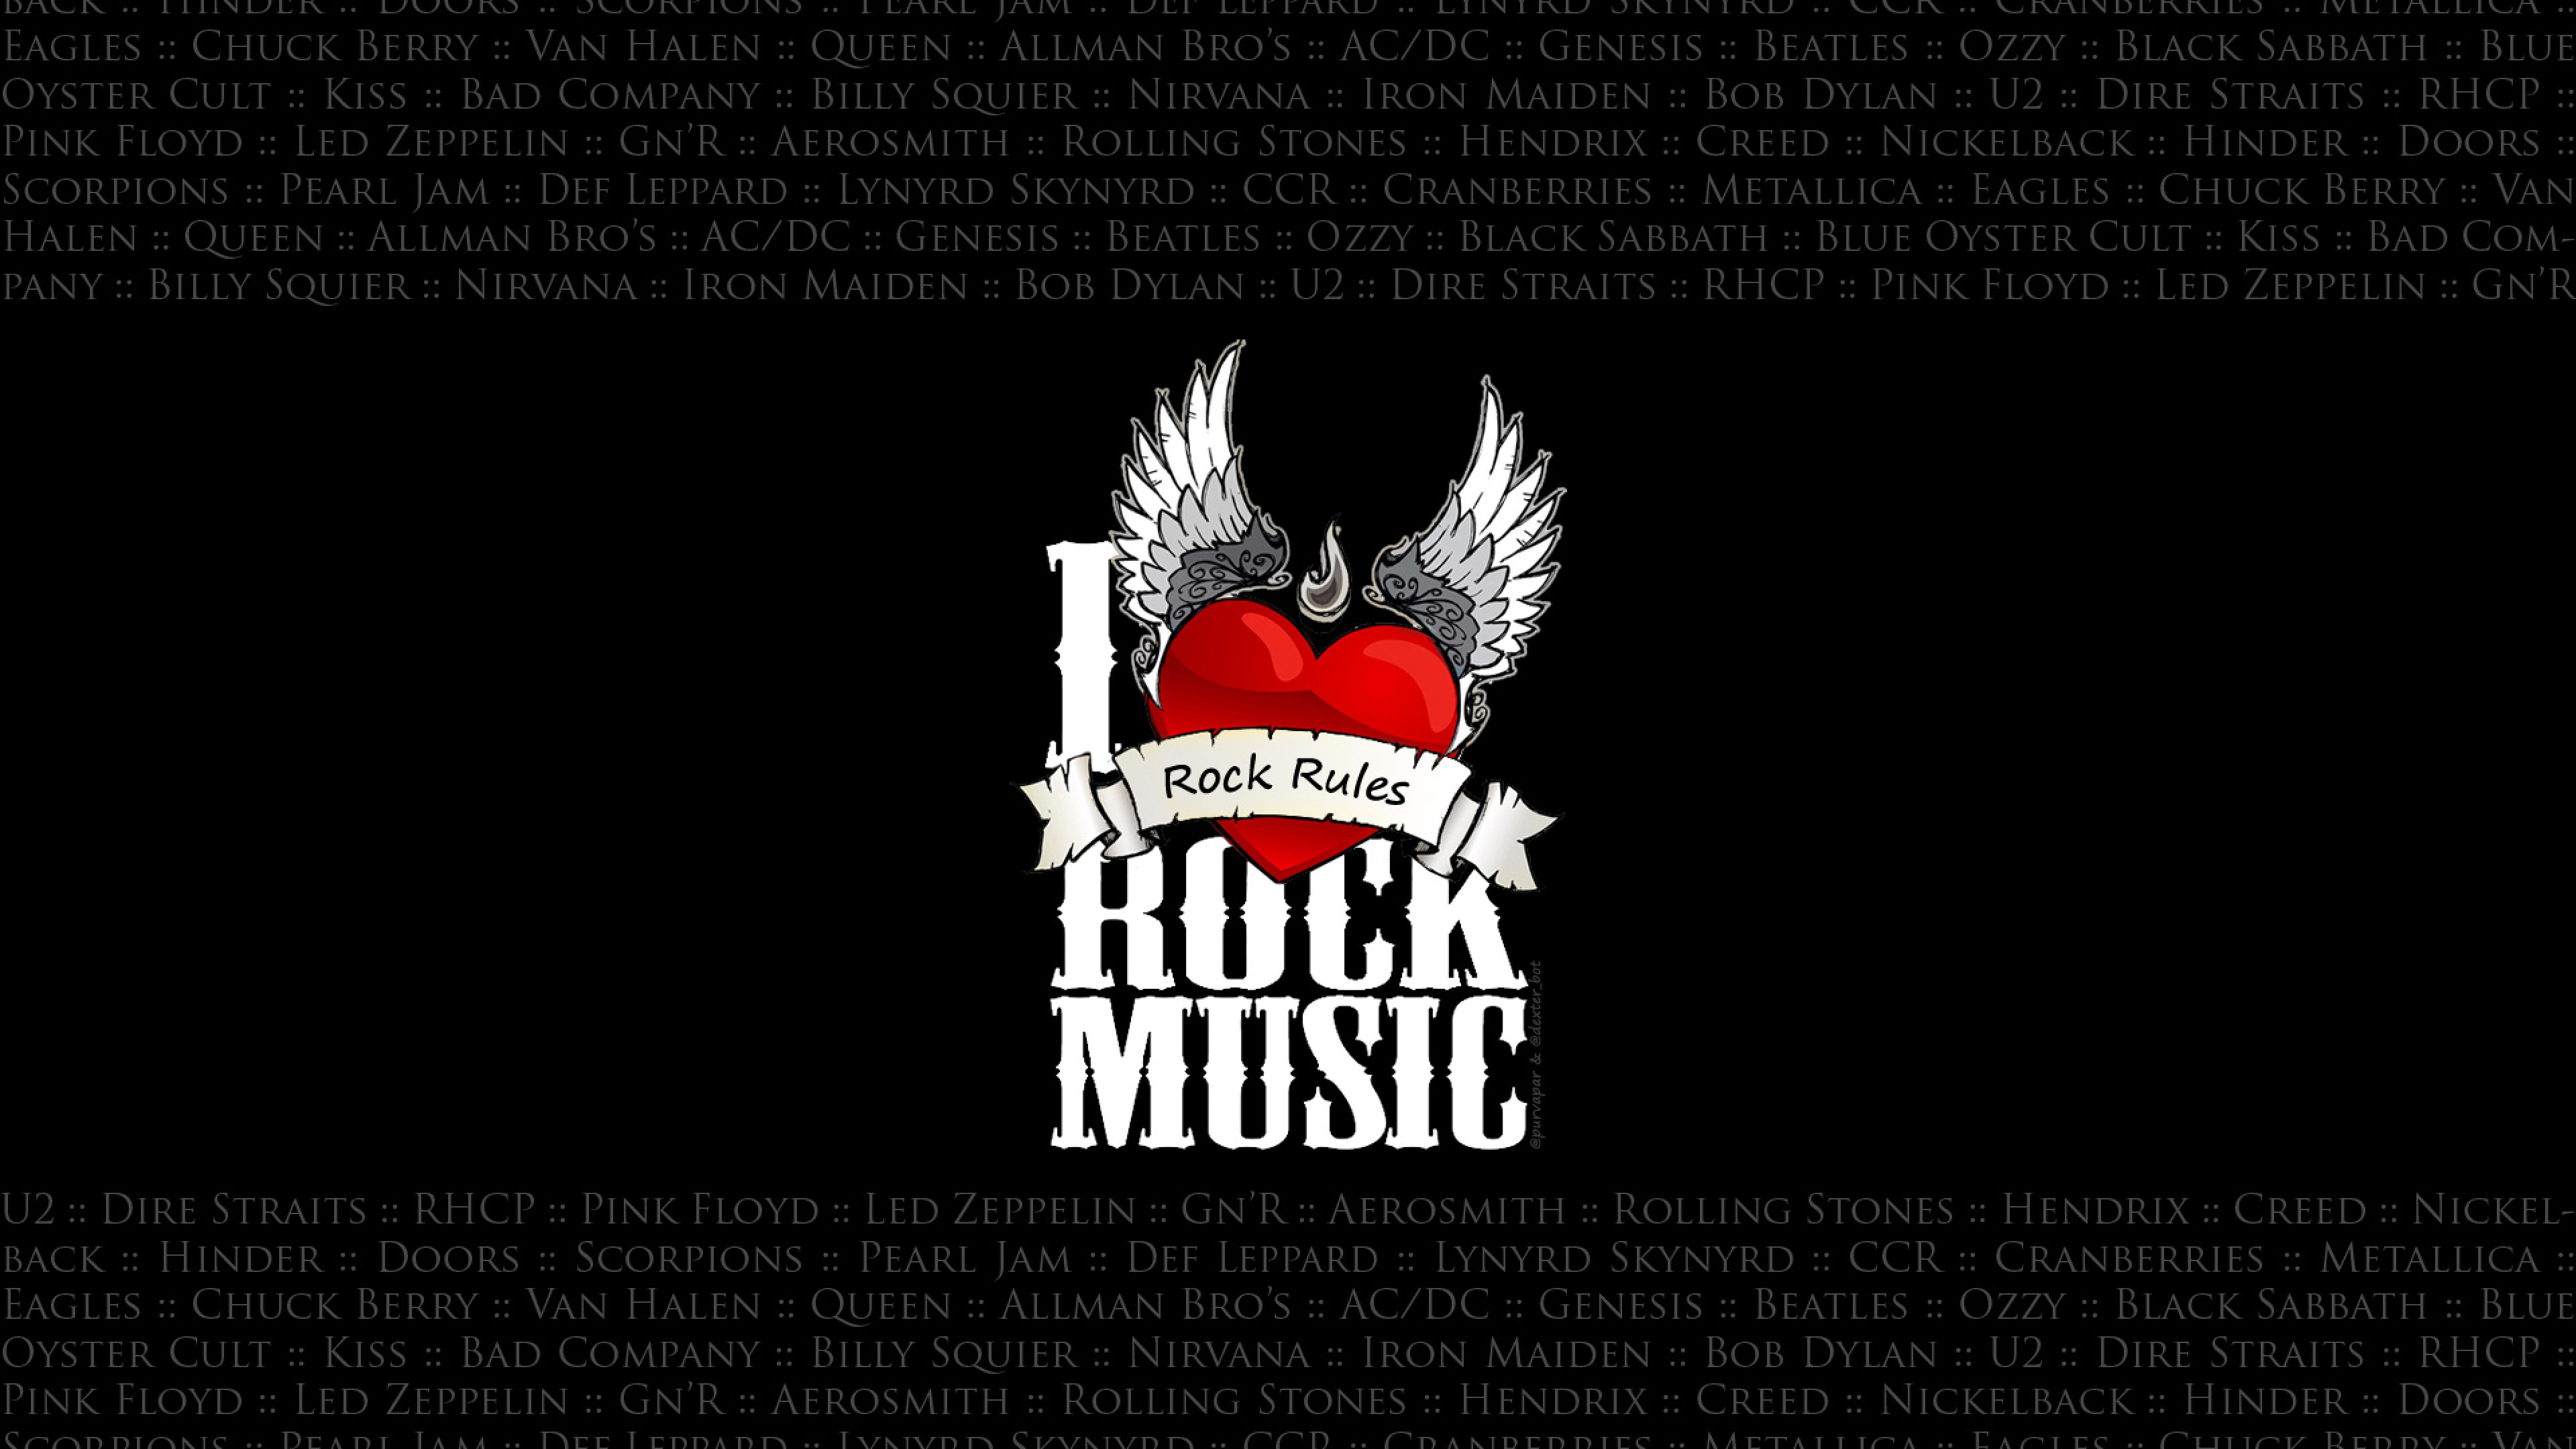 I Love Rock Music Full HD Wallpaper For Desktop And Mobiles 4k